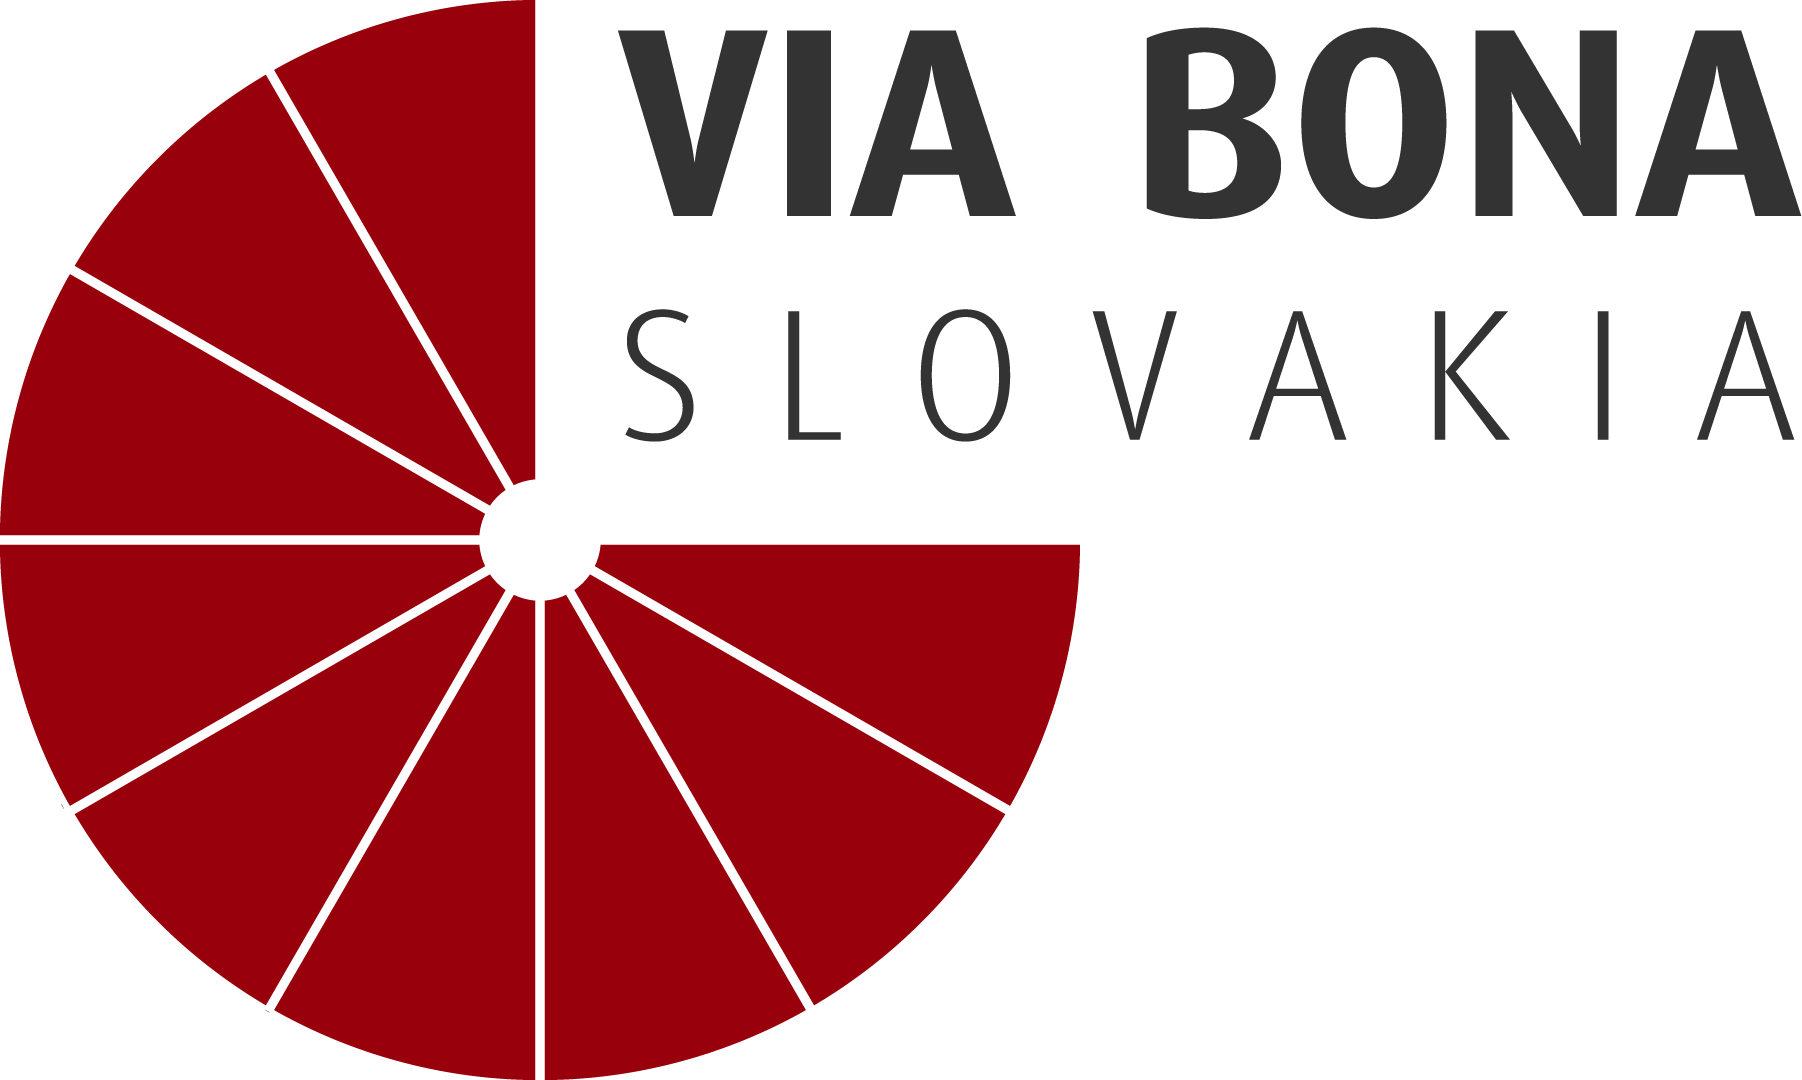 Zelená firma – Via Bona Slovakia logo